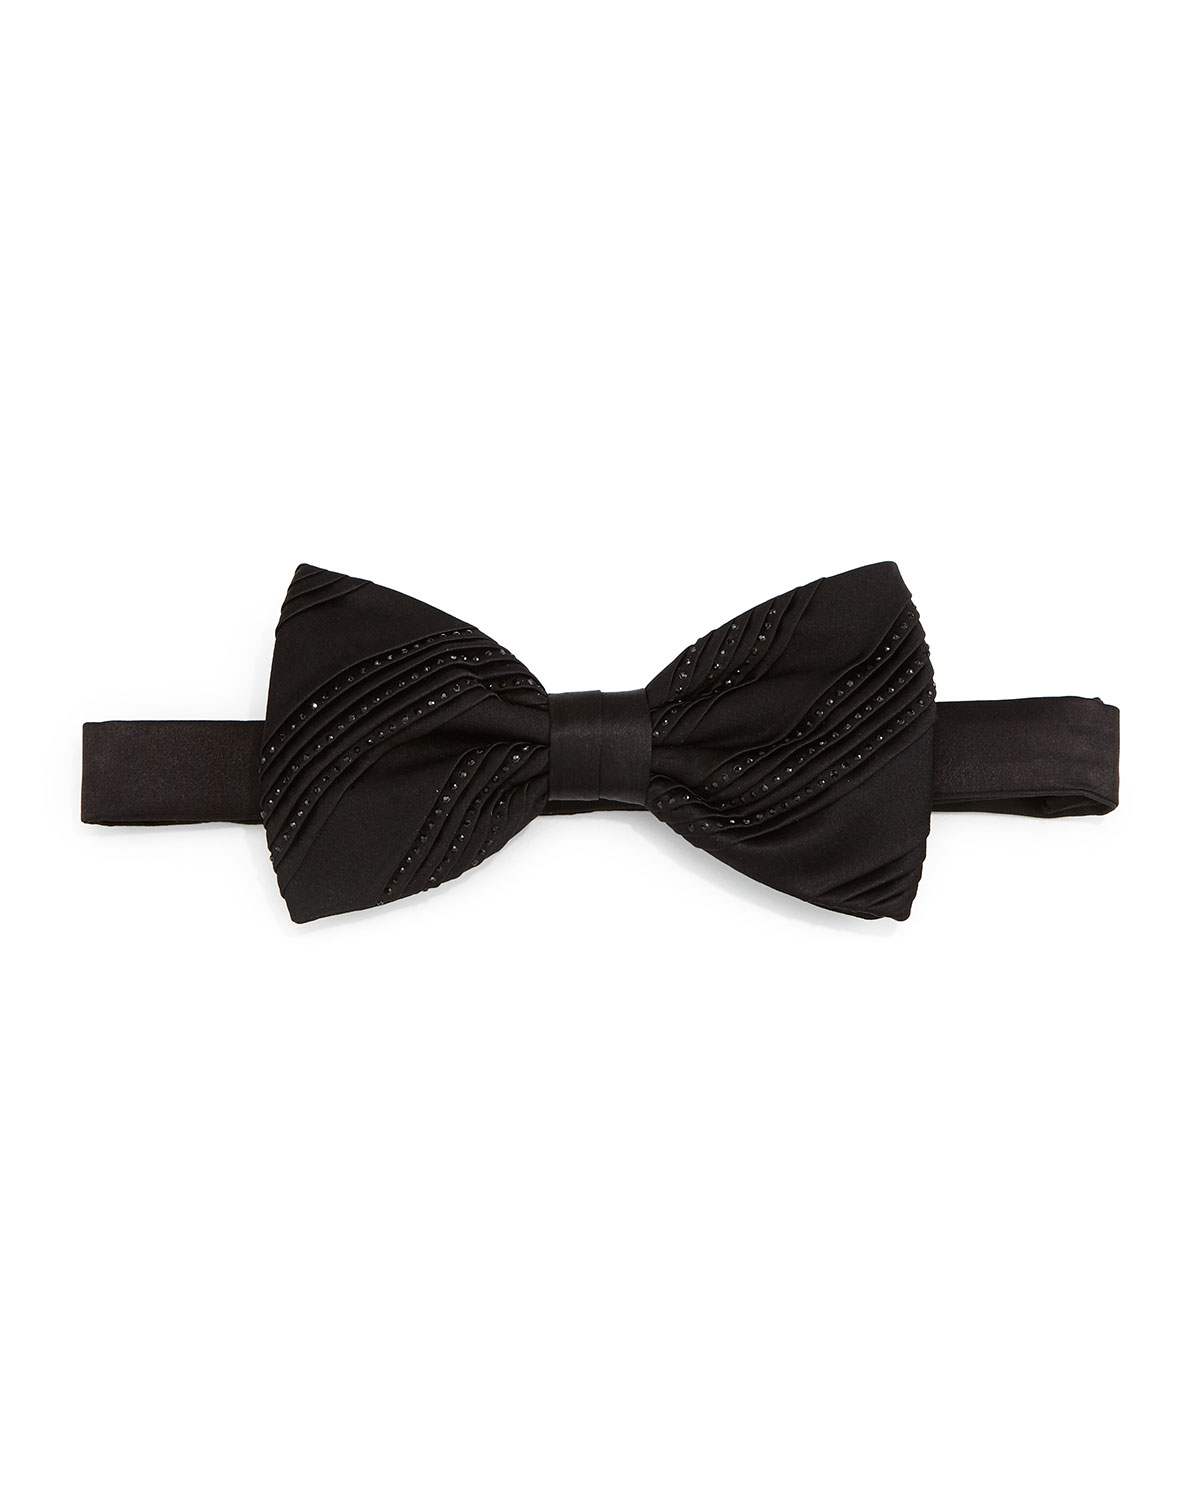 Pleated Crystal Bow Tie, Black